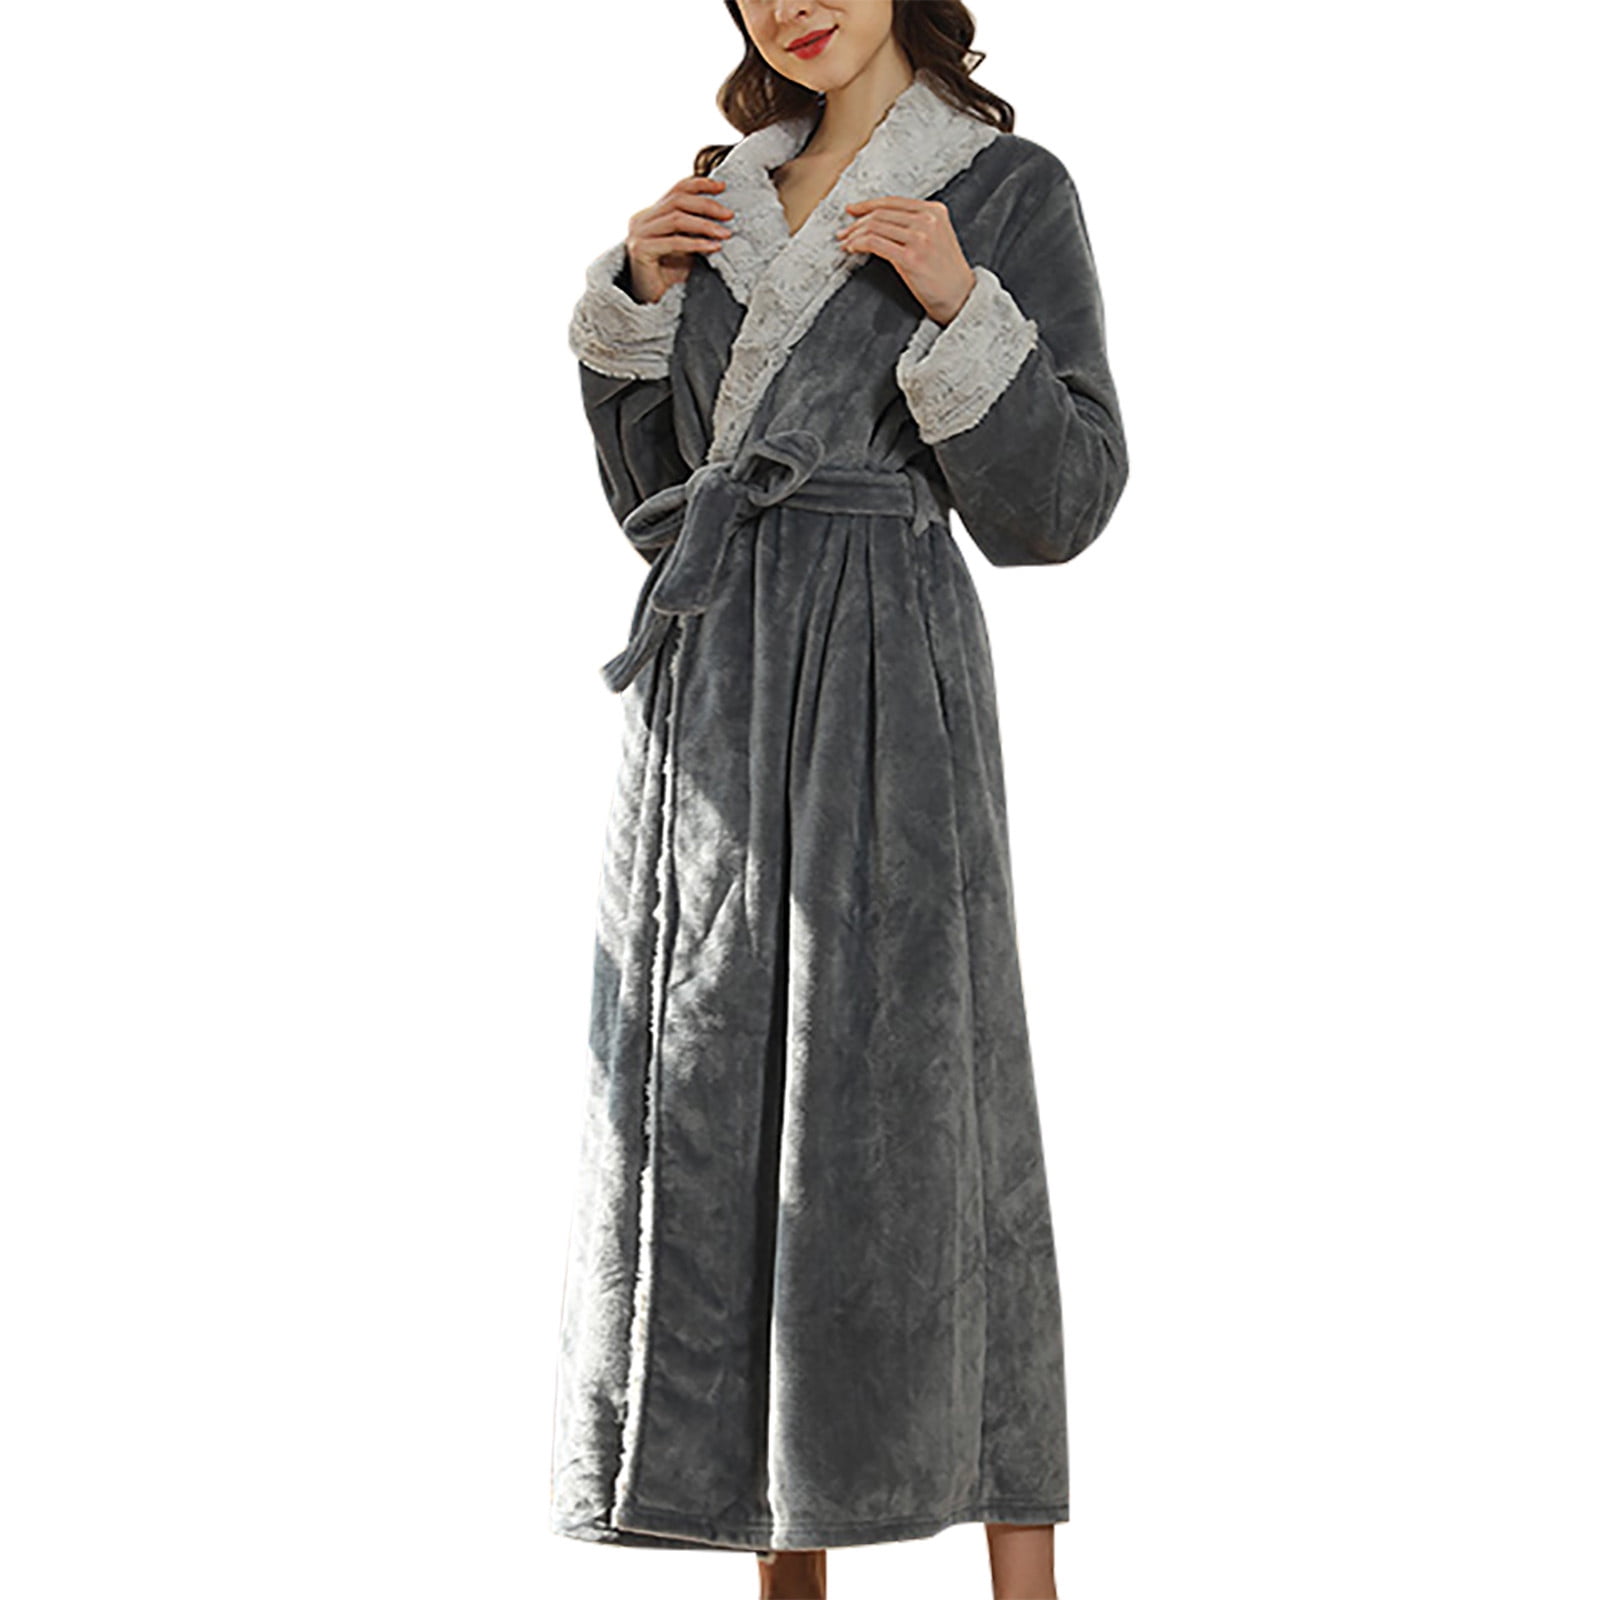 Long Robes for Women Winter Fleece Warm Couple Bathrobe Nightgown Fluffy Super Soft Sleepwear Cozy Shower Spa Robe Ladies Clothes b51431a8 501d 4f27 af46 809883839314.ff359aeb6b65543087c6c659ba2bcf09